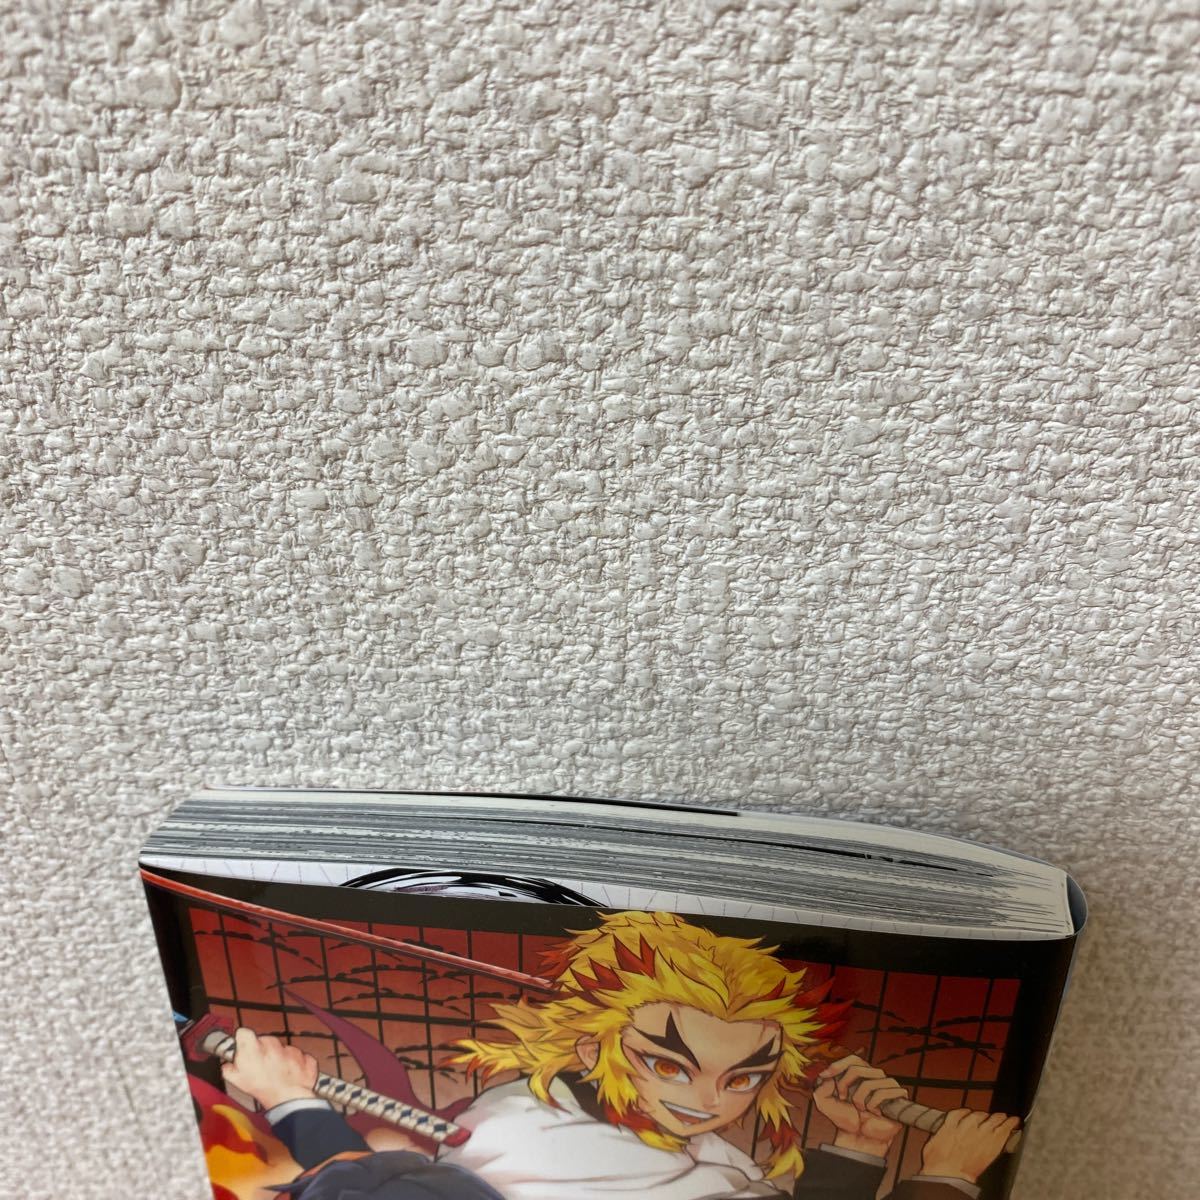 鬼滅の刃 外伝 (ジャンプコミックス) コミック (日本語)